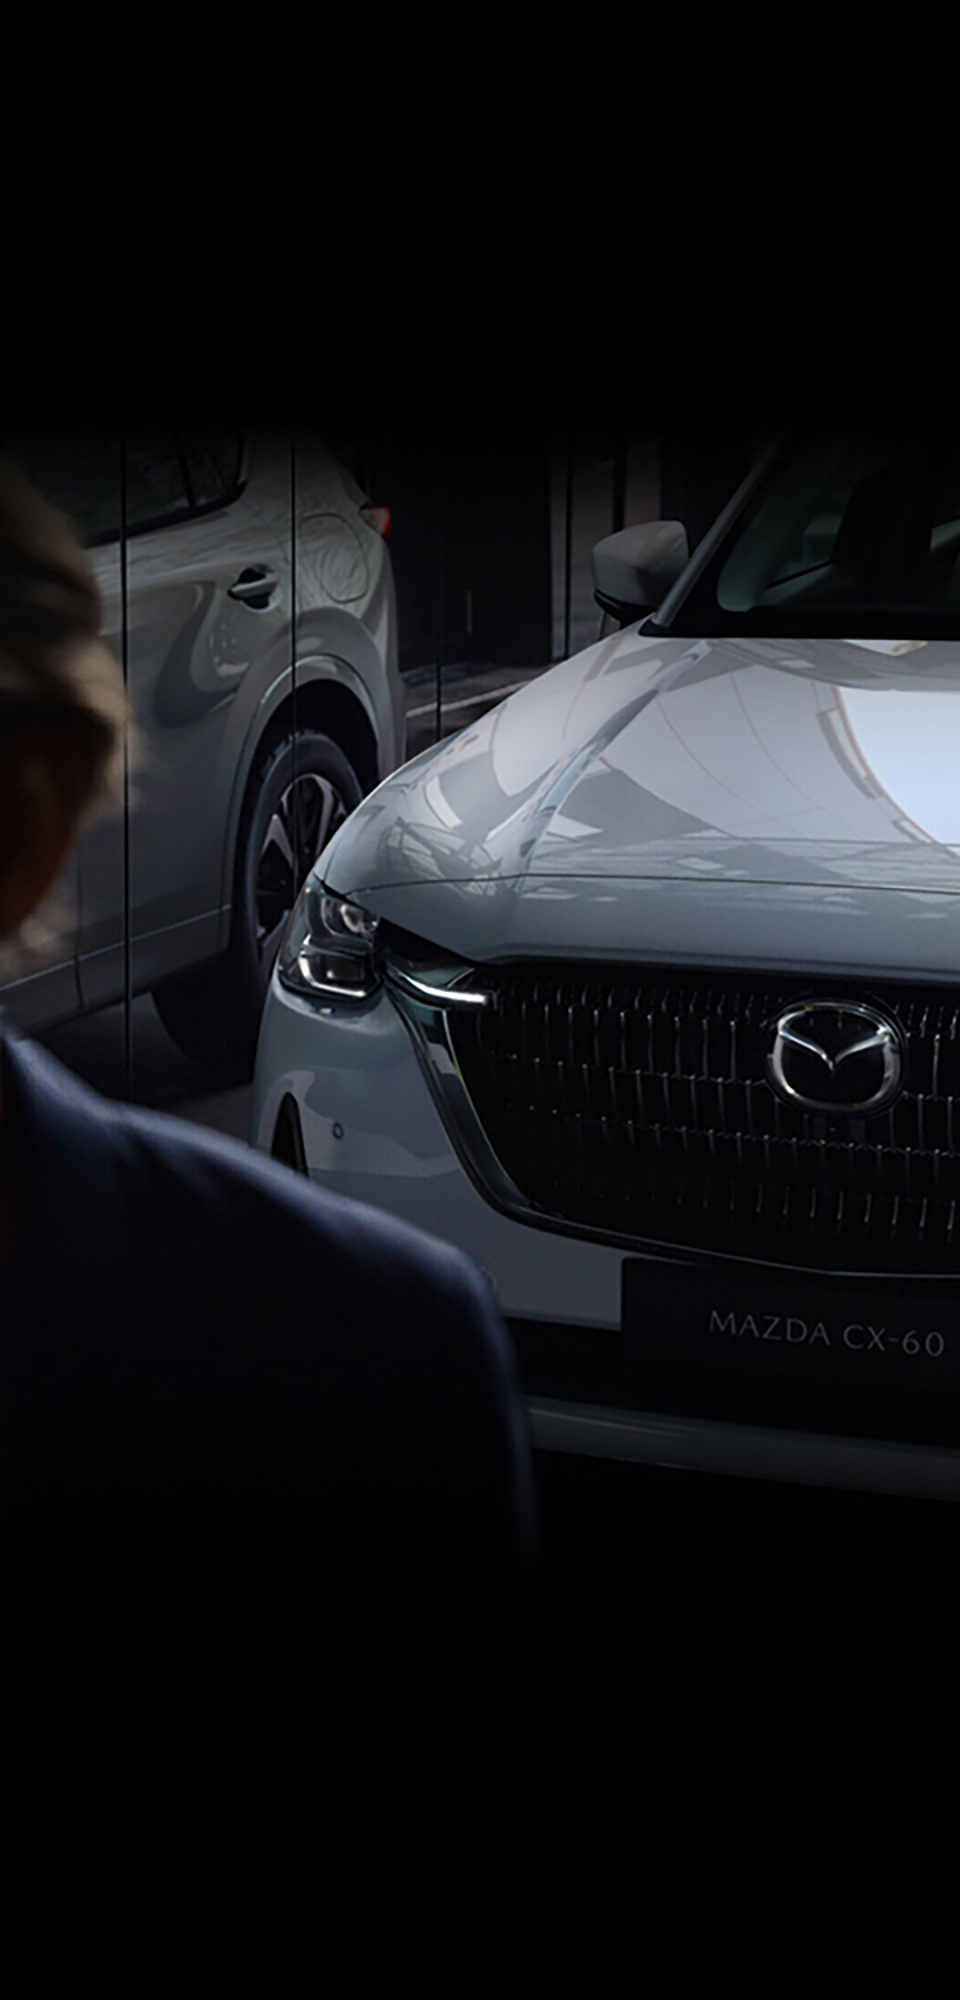 Le nouveau SUV hybride rechargeable Mazda CX-60, vu de l’avant, se reflétant dans une vitre.